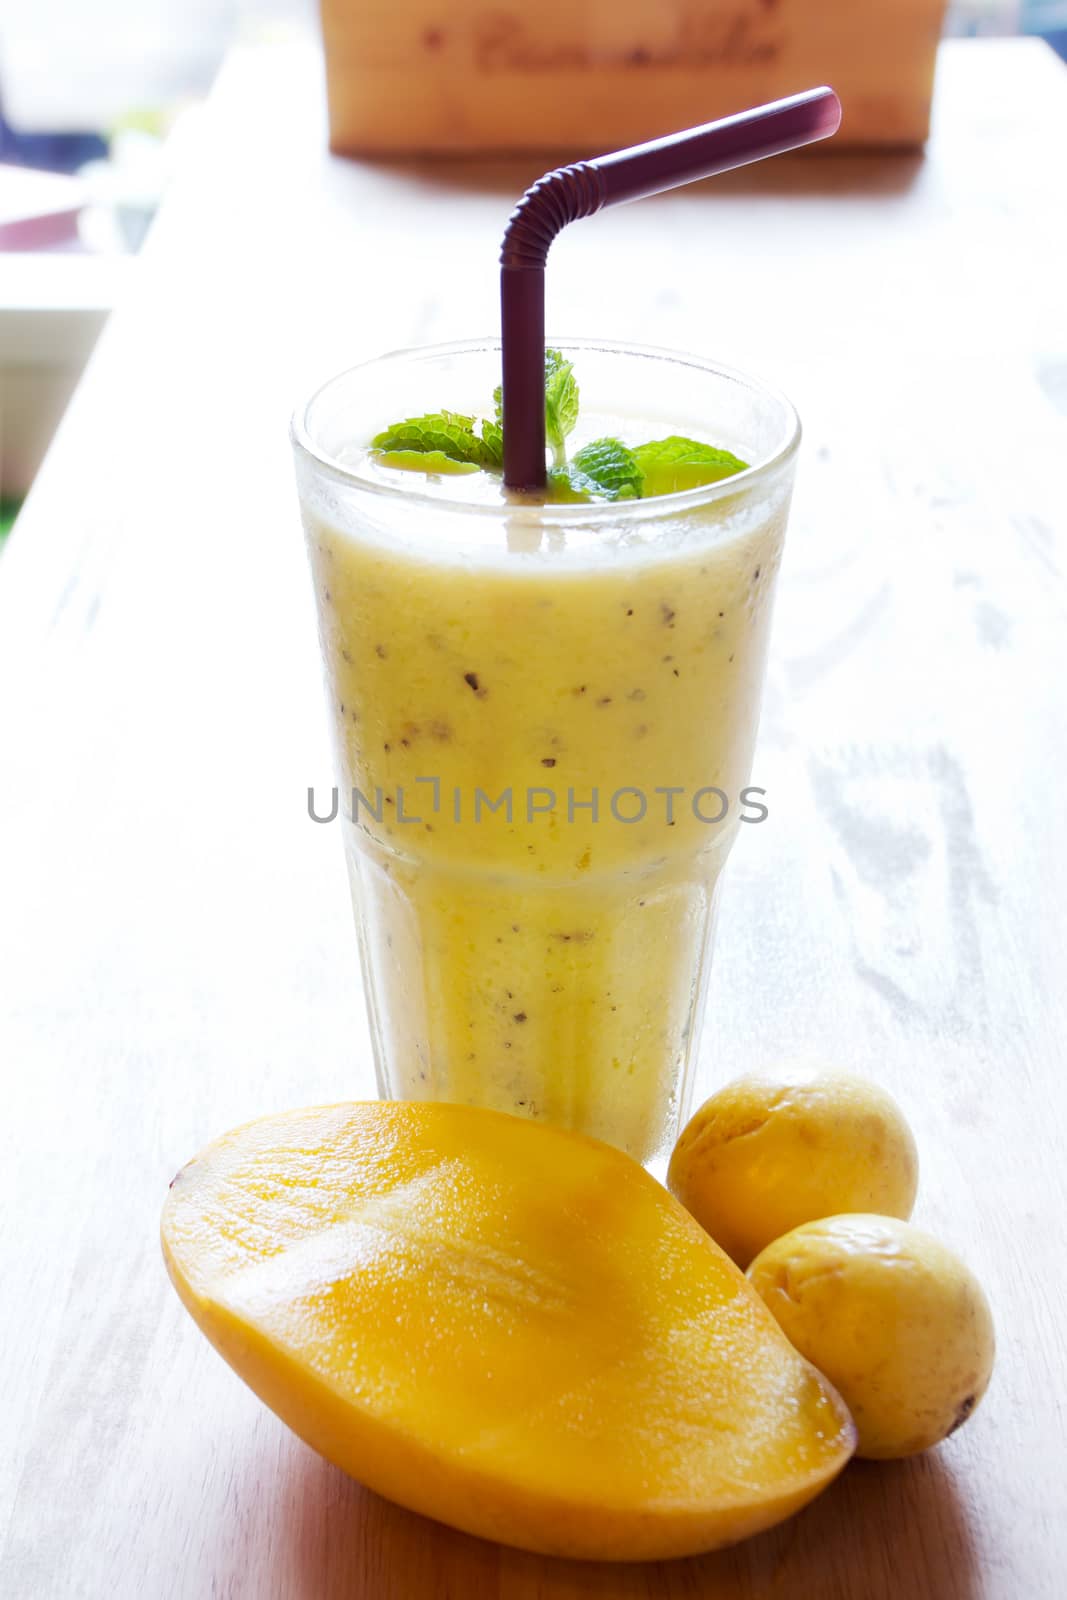 Healthy Smoothie juice by wyoosumran